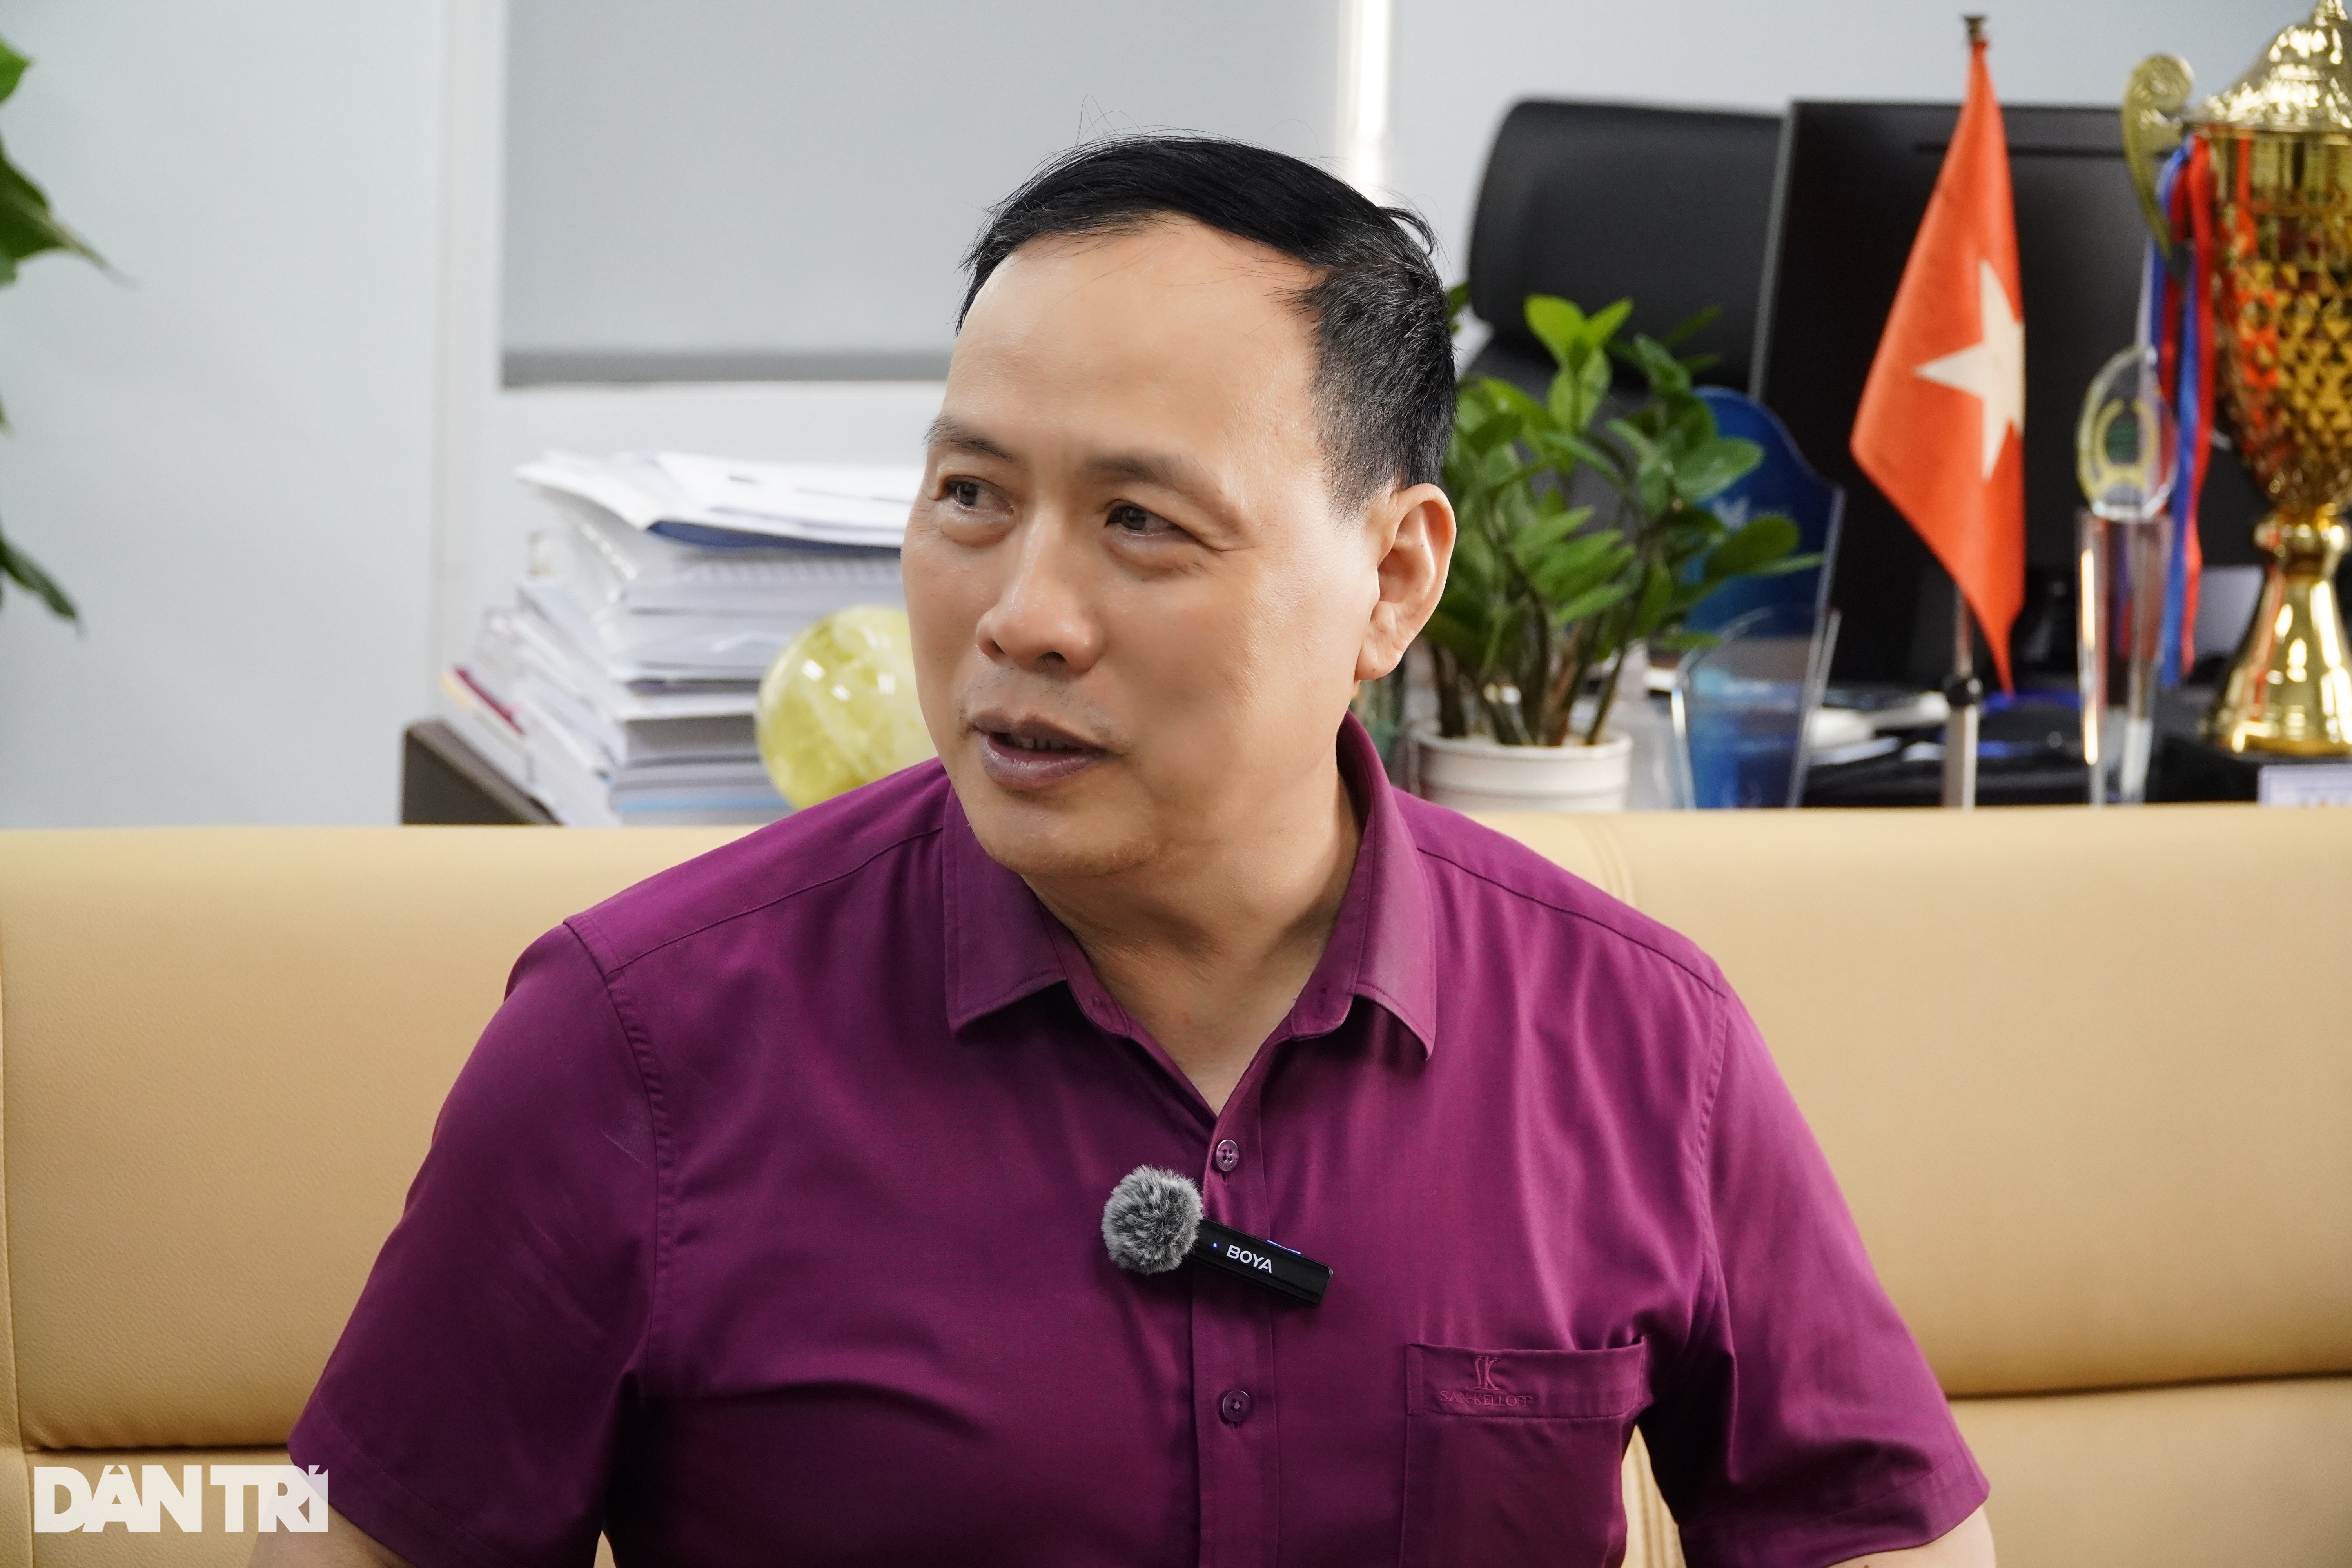 Tiến sĩ khoa học Nguyễn Đình Đức trò chuyện với phóng viên Dân trí (Ảnh: Trần Vi).